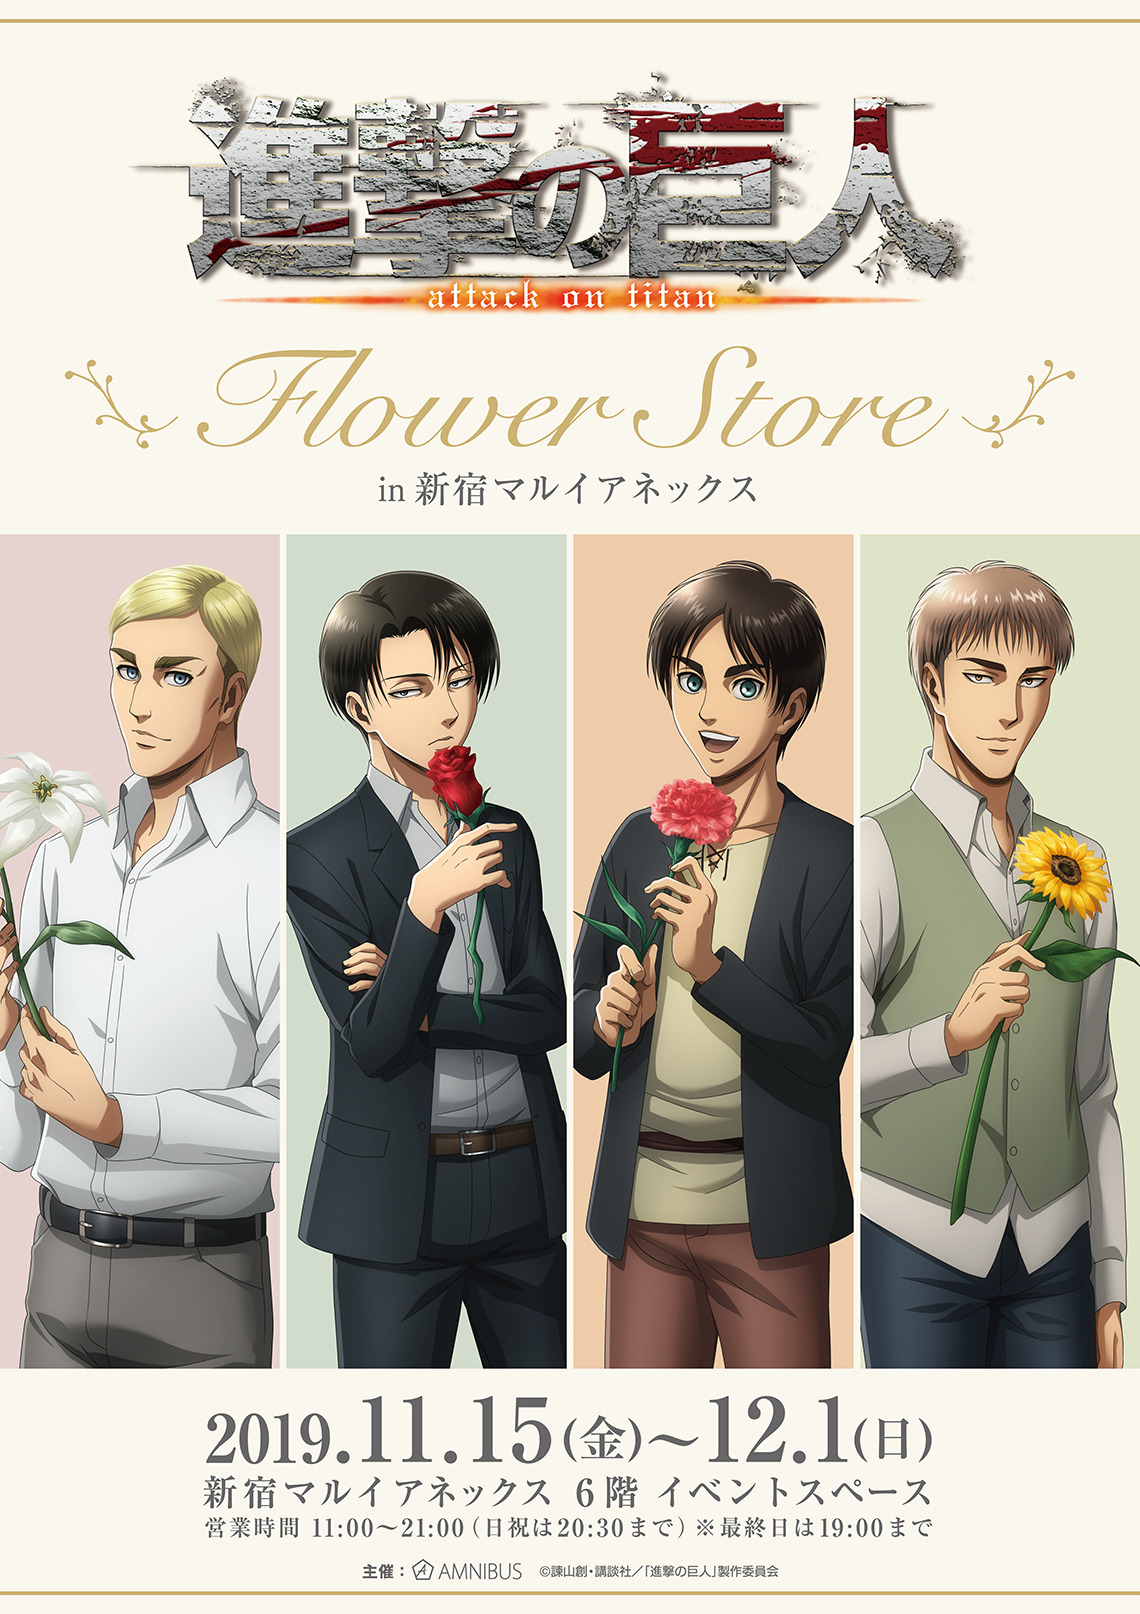 進撃の巨人 エレン リヴァイ兵長たちが 剣を お花 に持ち替えた 新グッズのテーマはflower Store アニメ アニメ